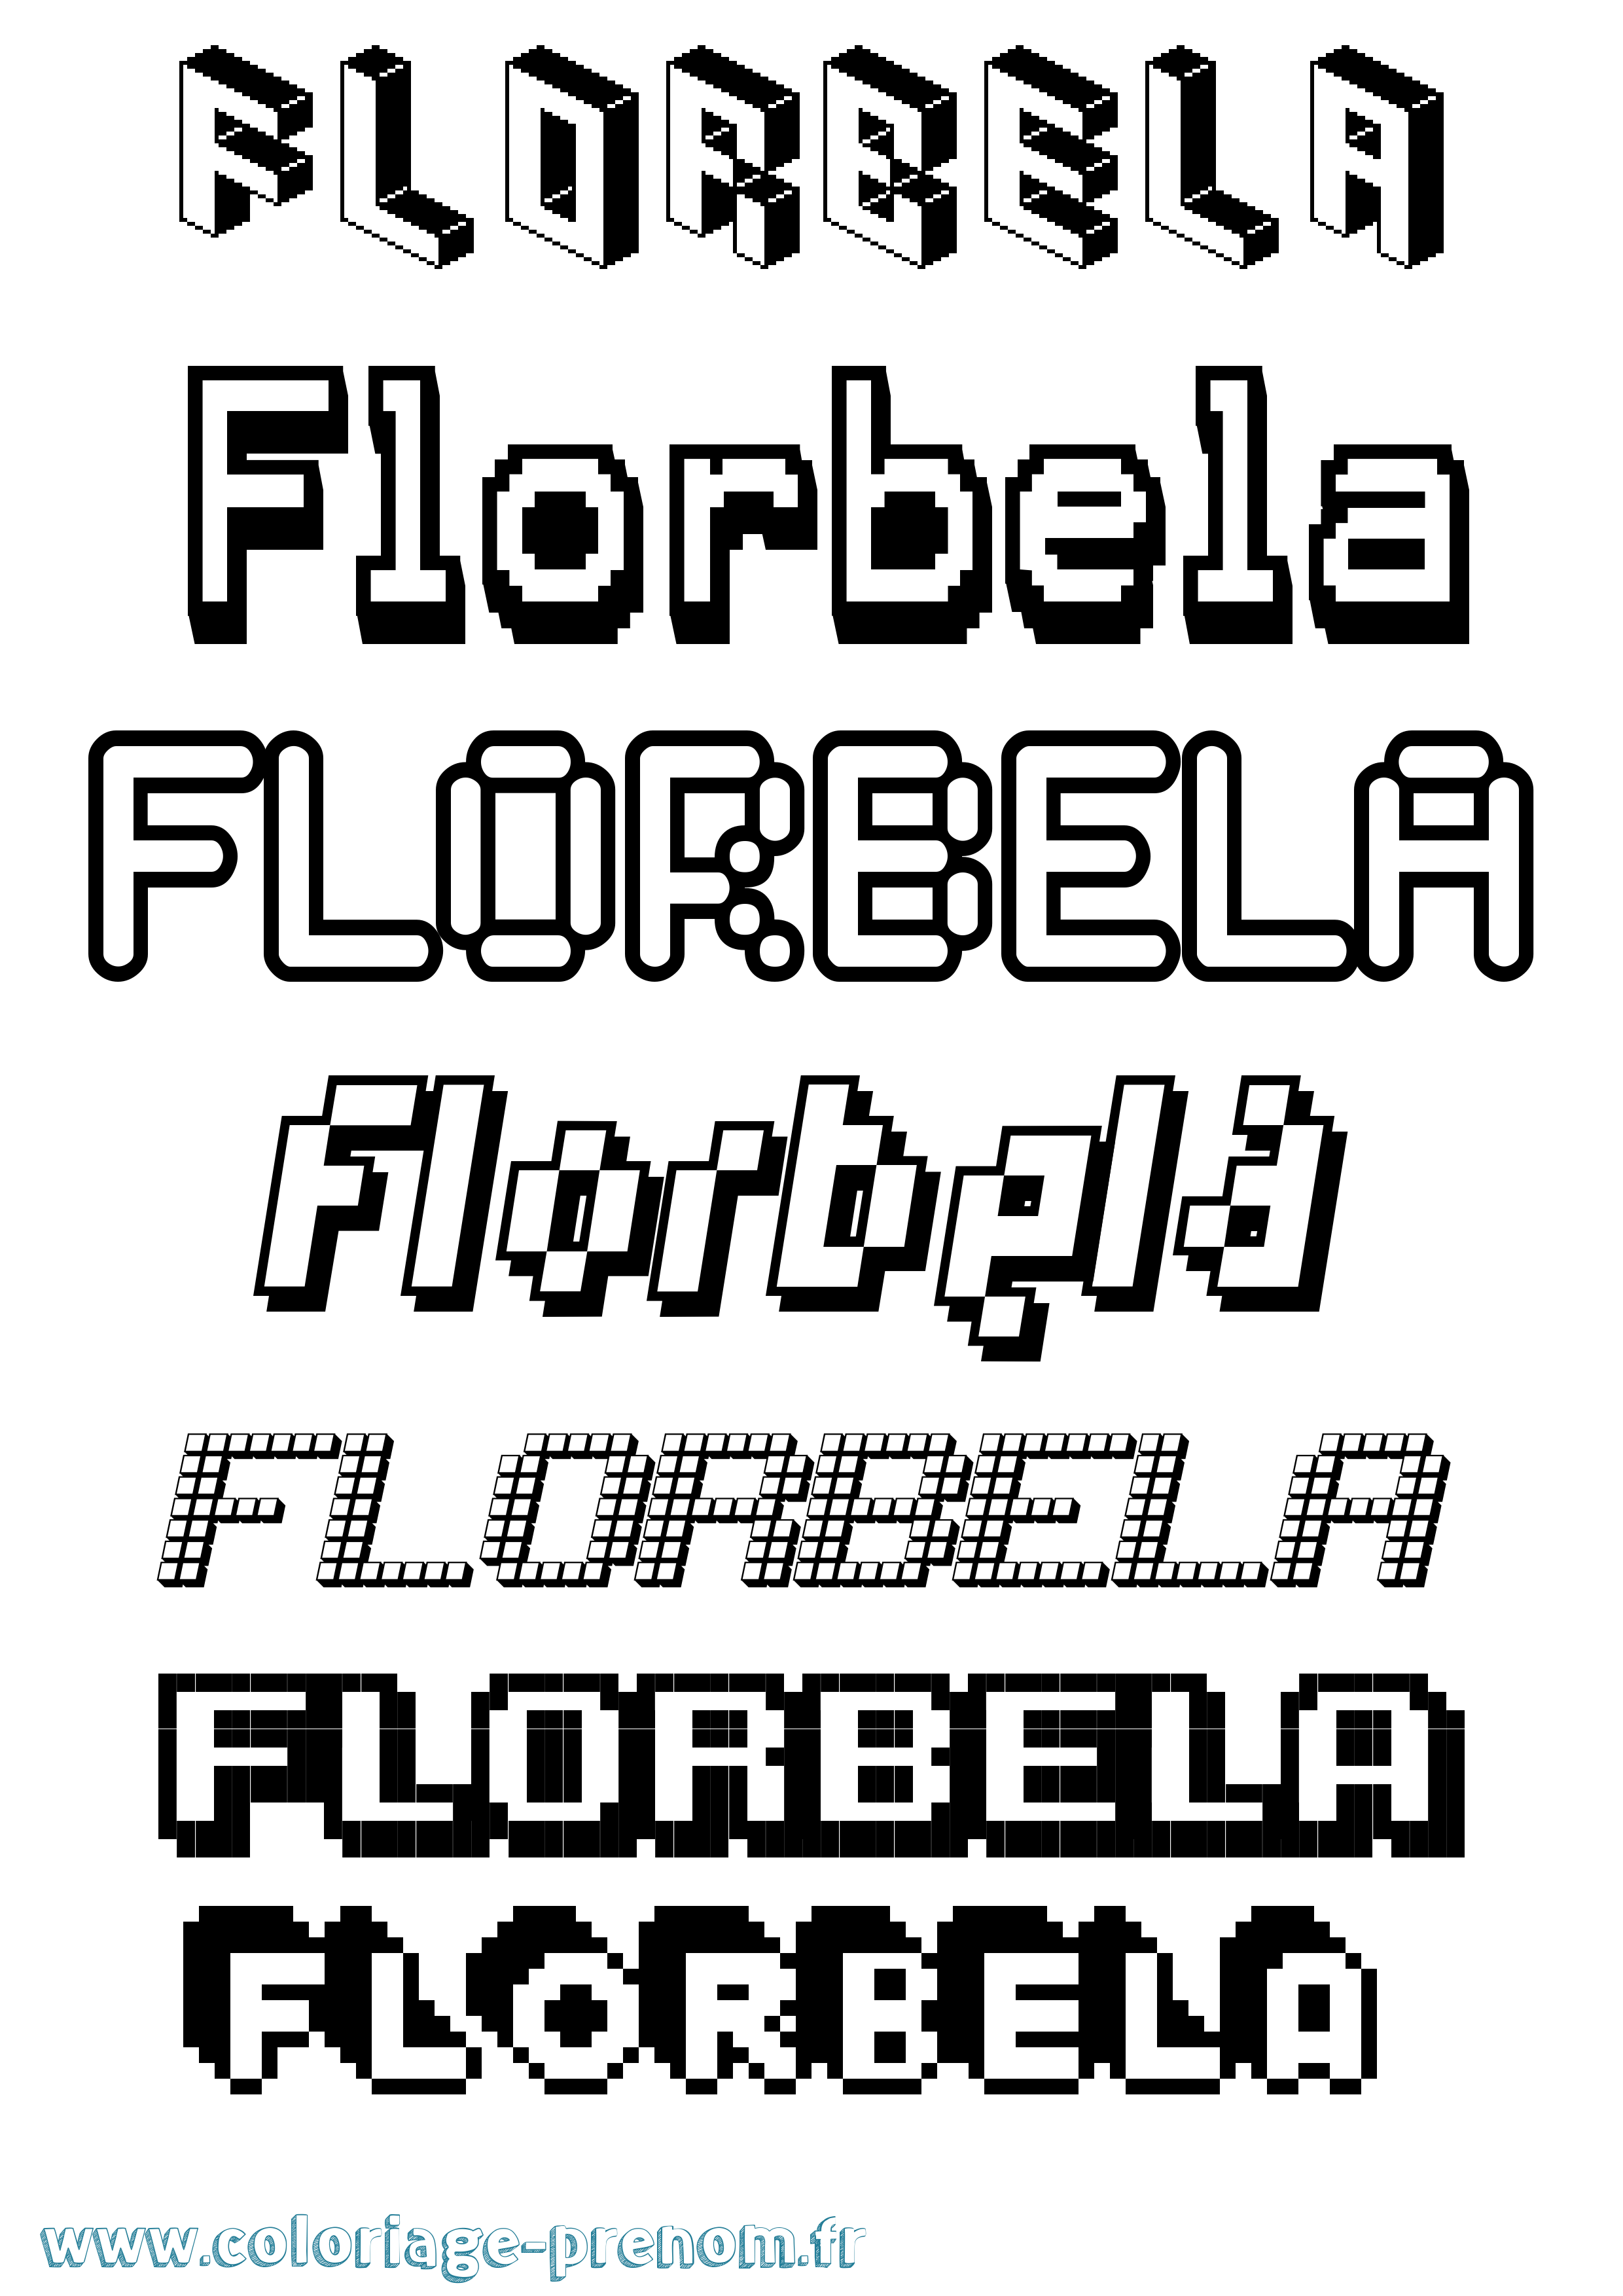 Coloriage prénom Florbela Pixel